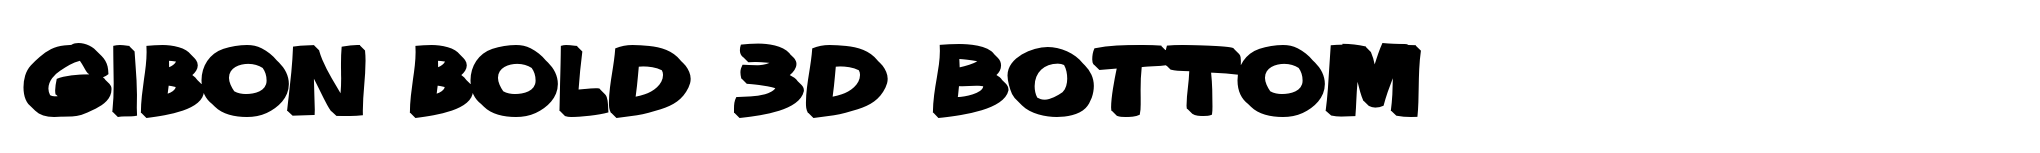 Gibon Bold 3D Bottom image